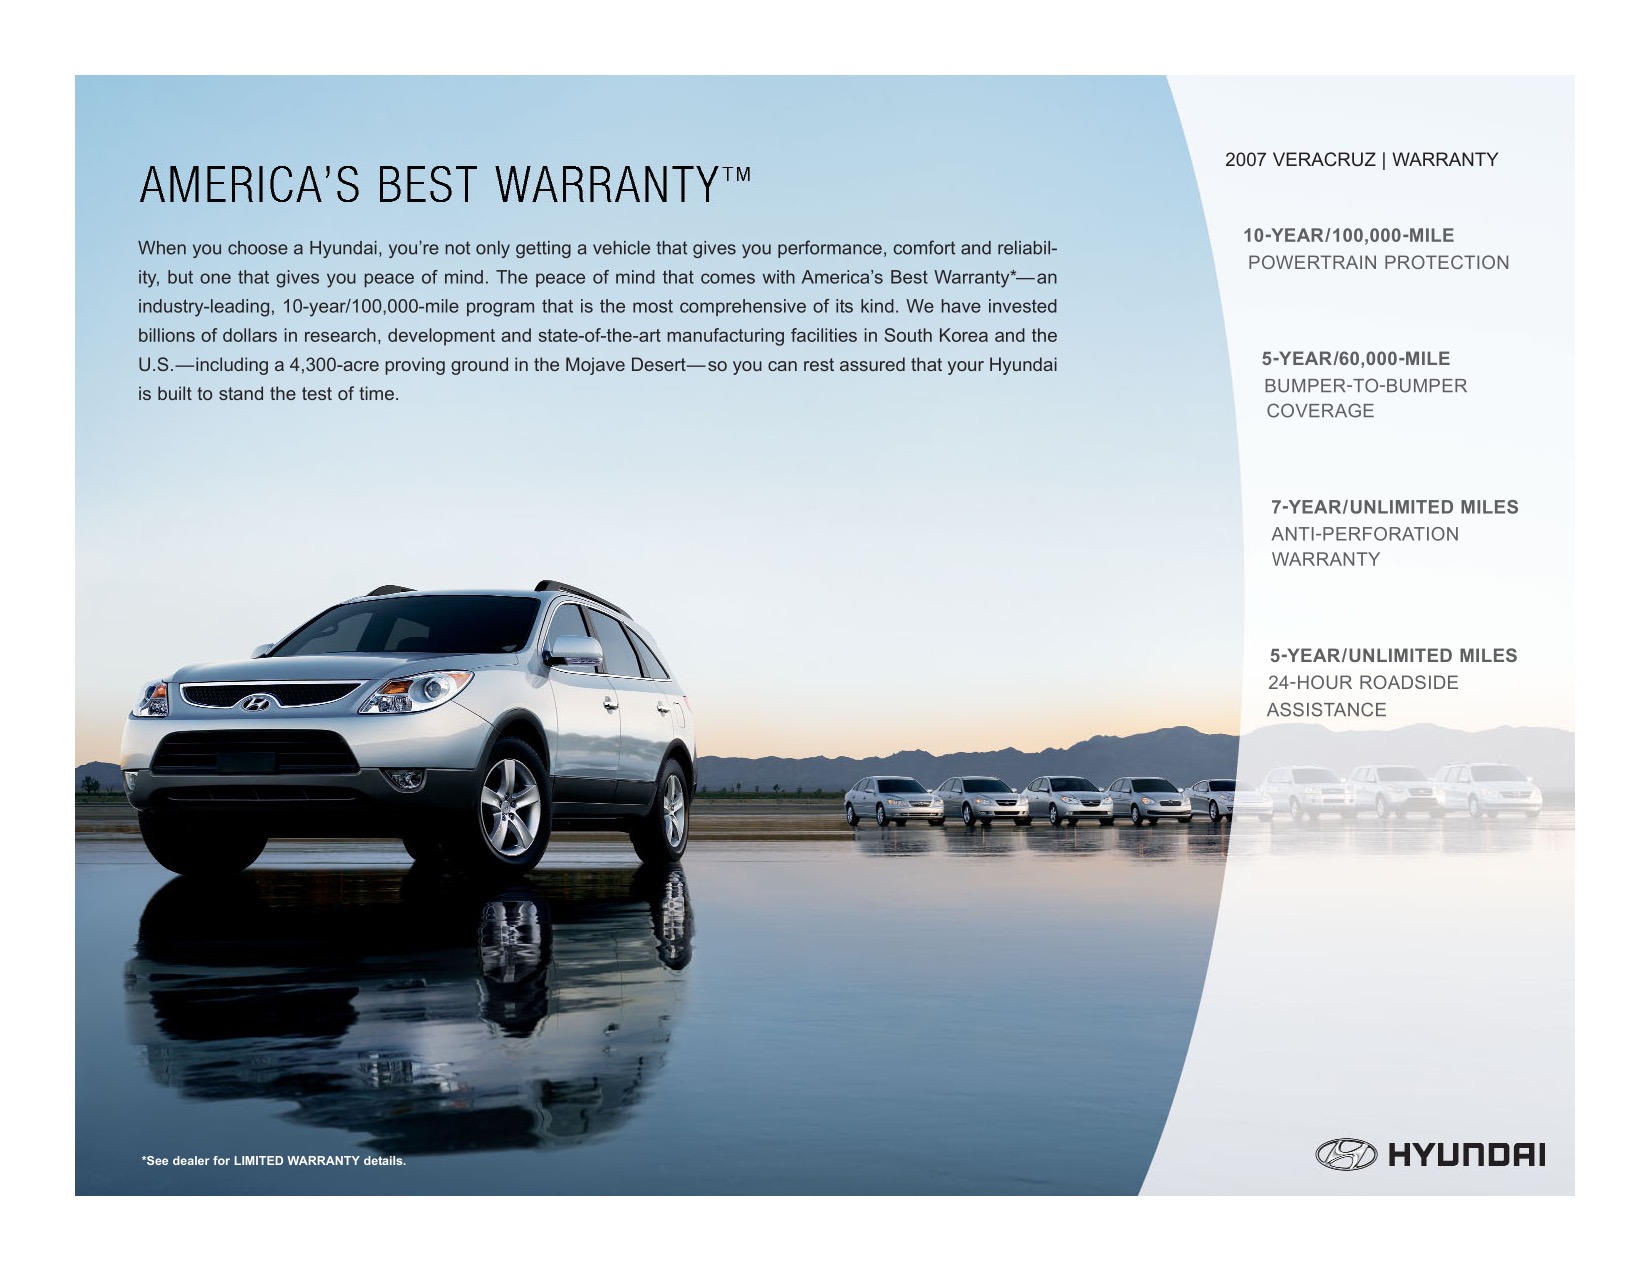 2007 Hyundai Veracruz Brochure Page 2